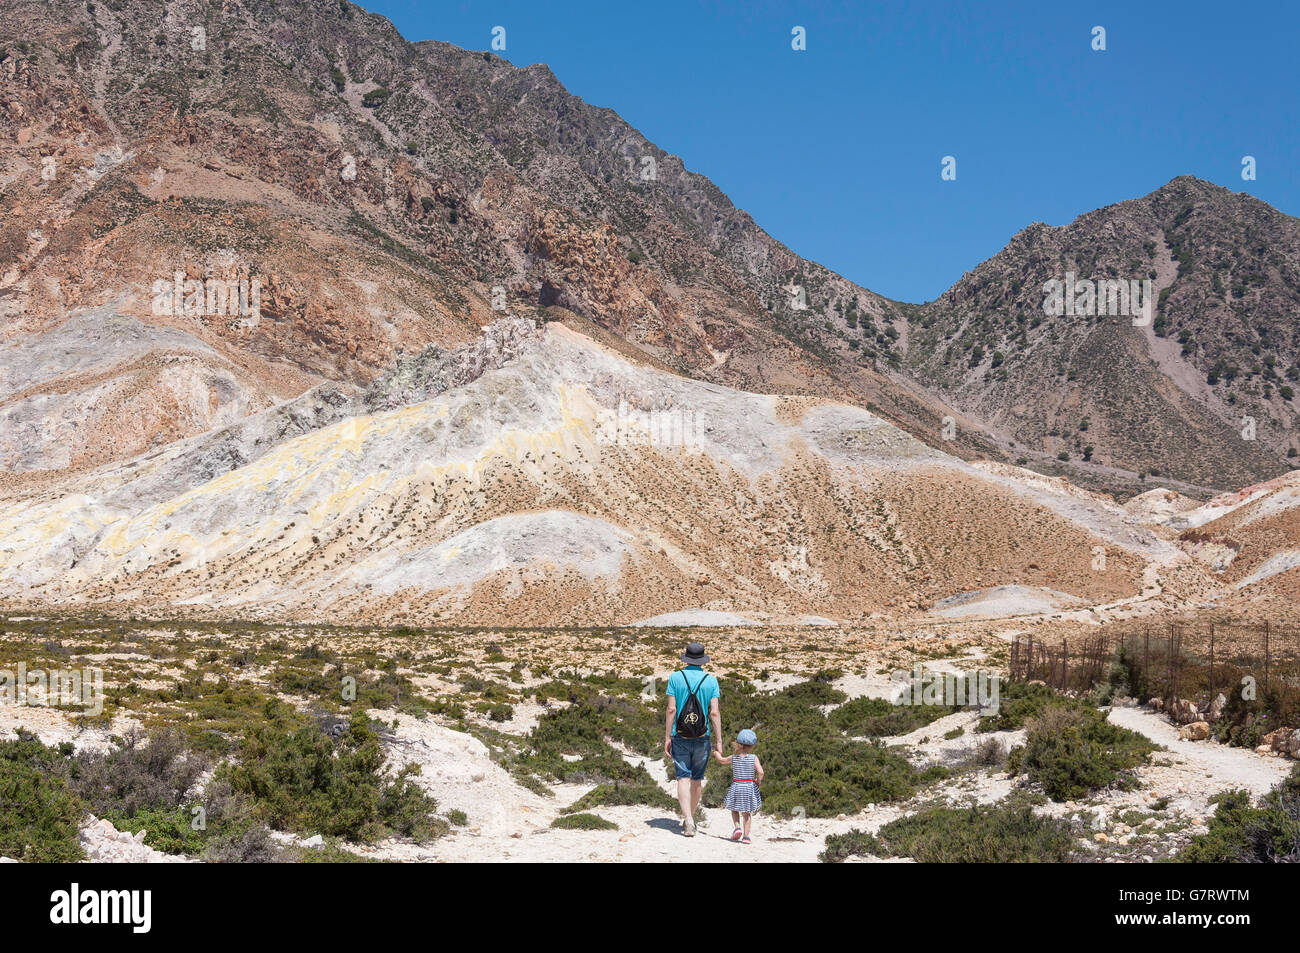 Vater und Tochter, die zu Fuß in der Nähe von Stefanos Vulkankrater, Nisyros (Nissyros), die Dodekanes, South Aegean Region, Griechenland Stockfoto